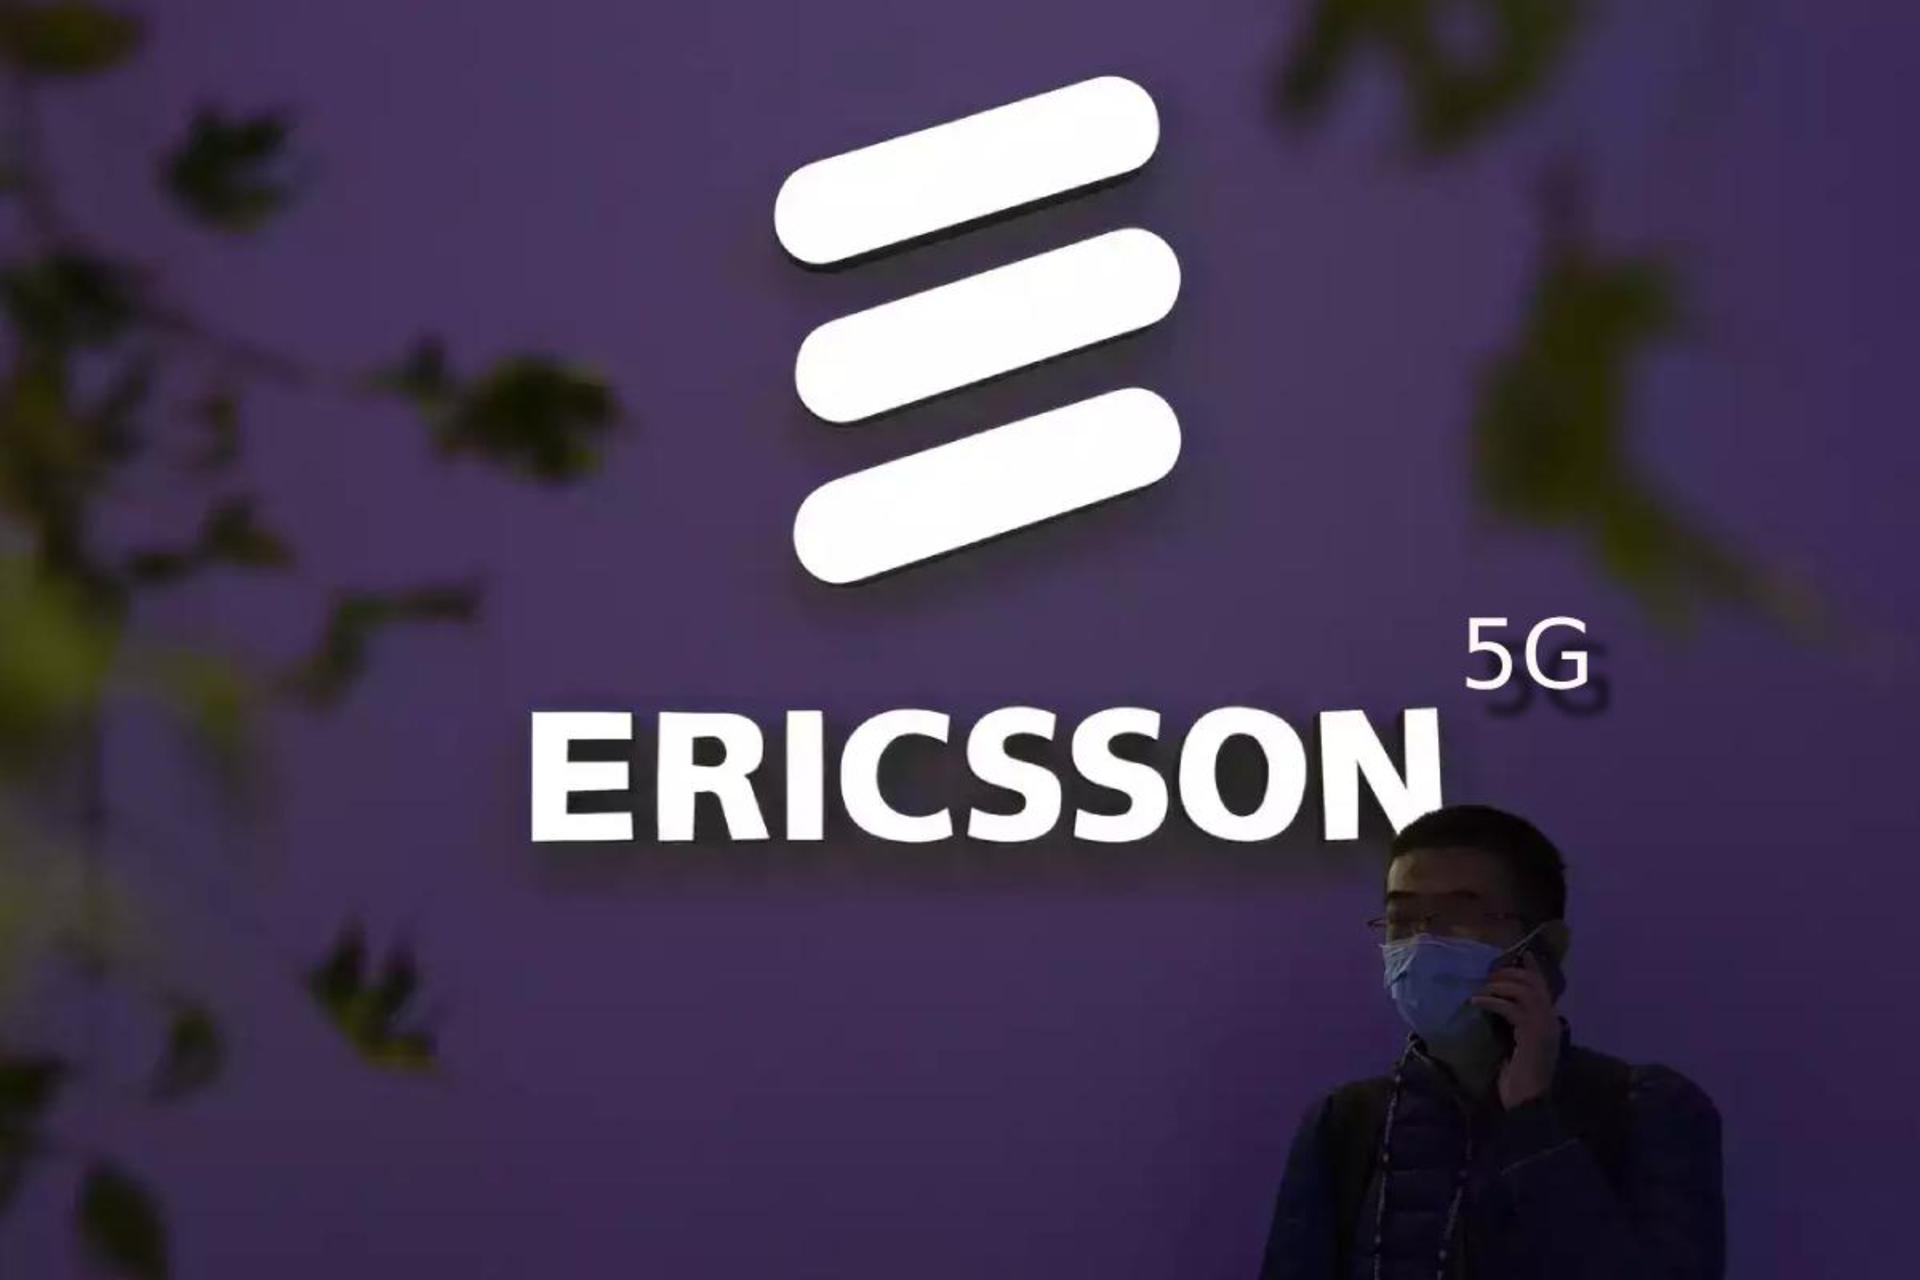 اریکسون | Ericsson